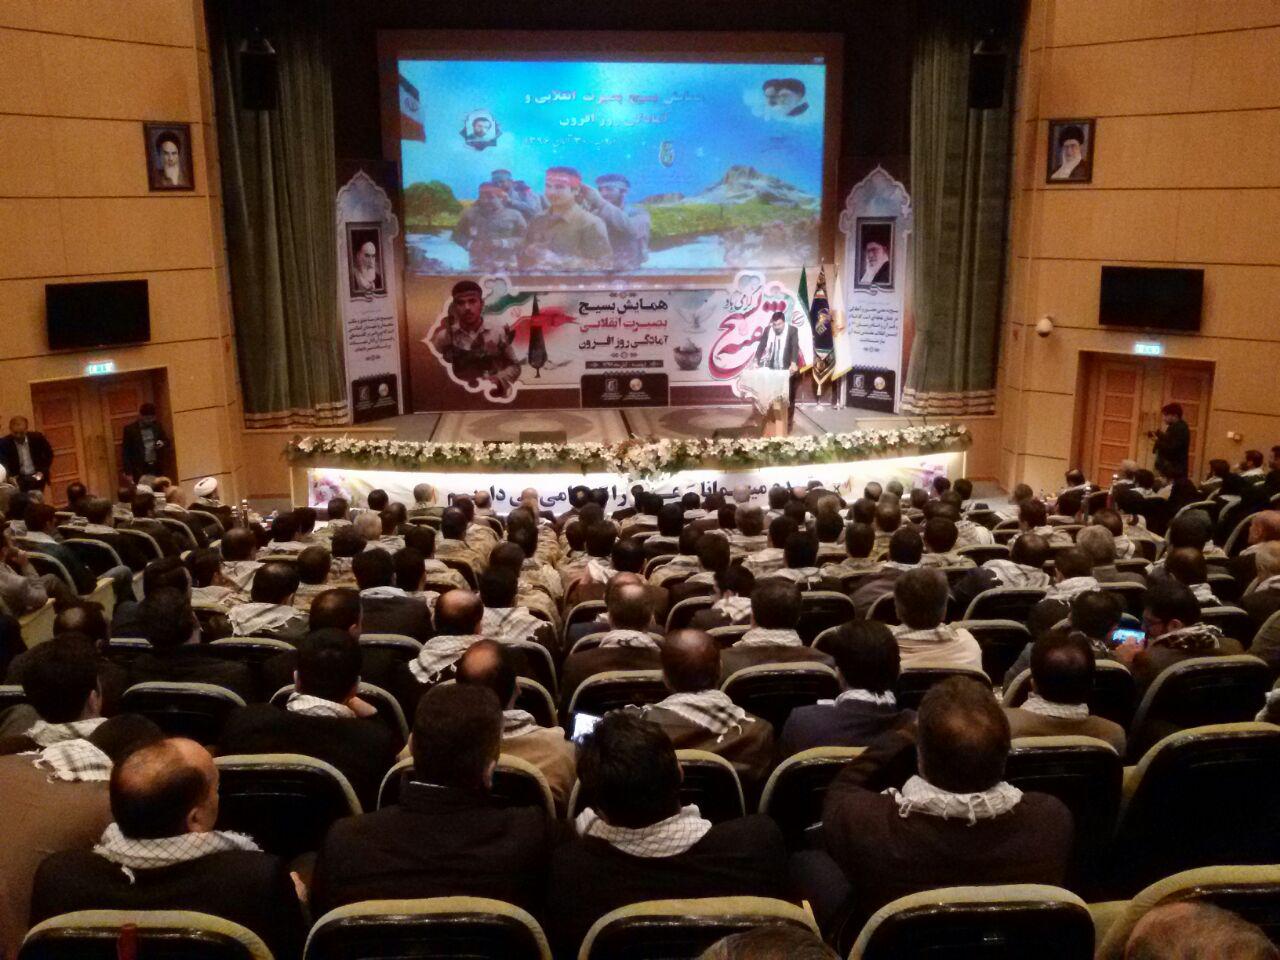 برگزاری همایش بسیج بصیرت انقلابی و آمادگی روز افزون در ارومیه